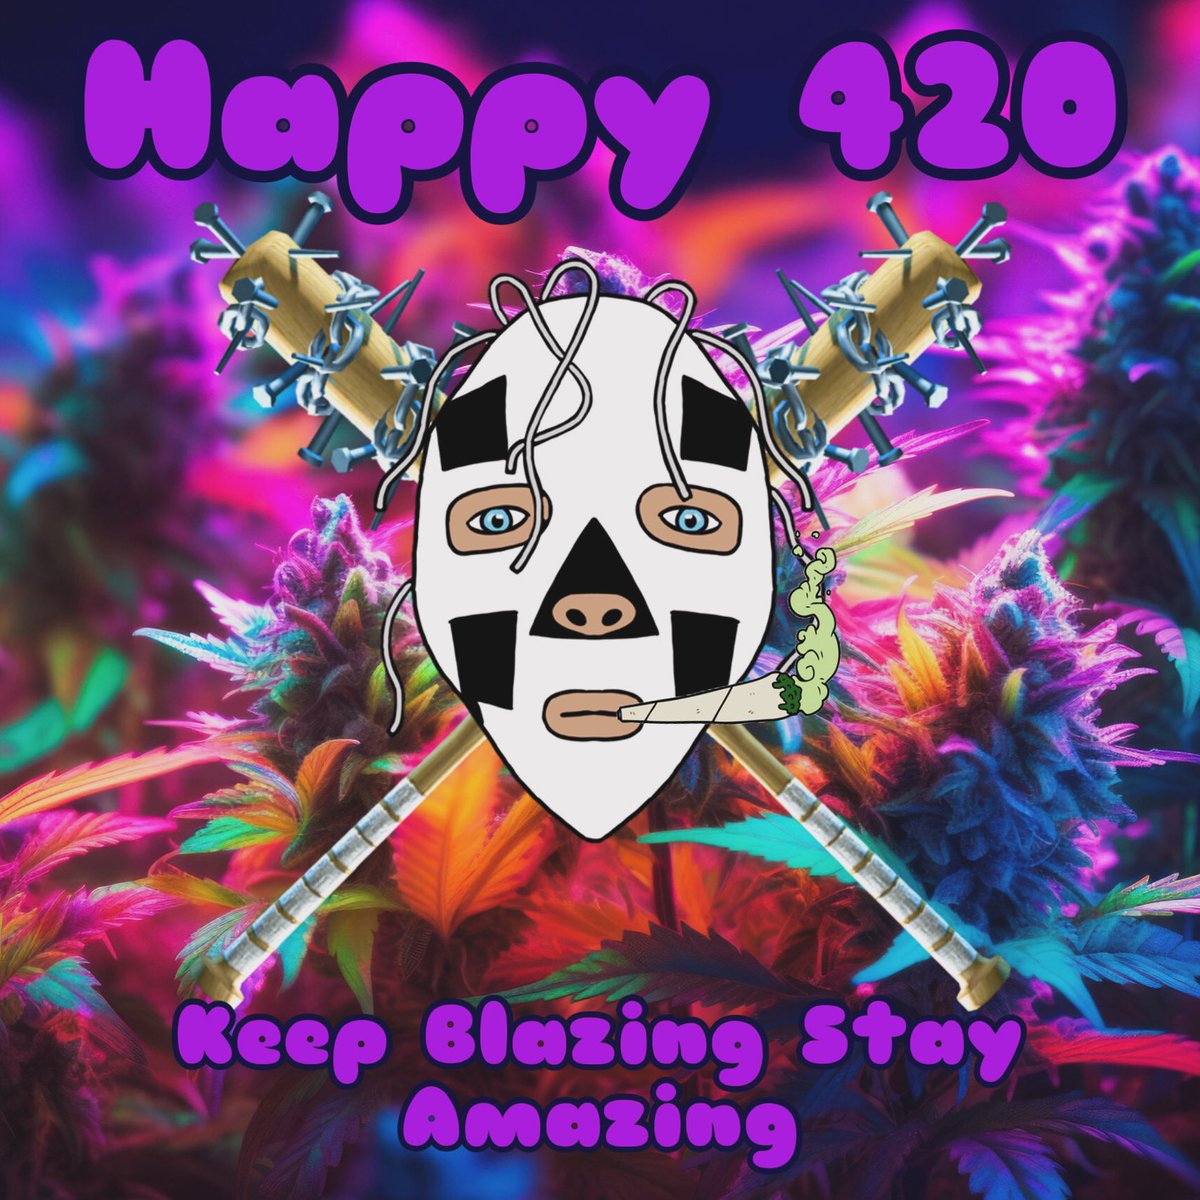 Happy 420 - Keep Blazing Stay Amazing

#WeedLovers #420day #420friendly #420Life #420twitch @420Twitch1